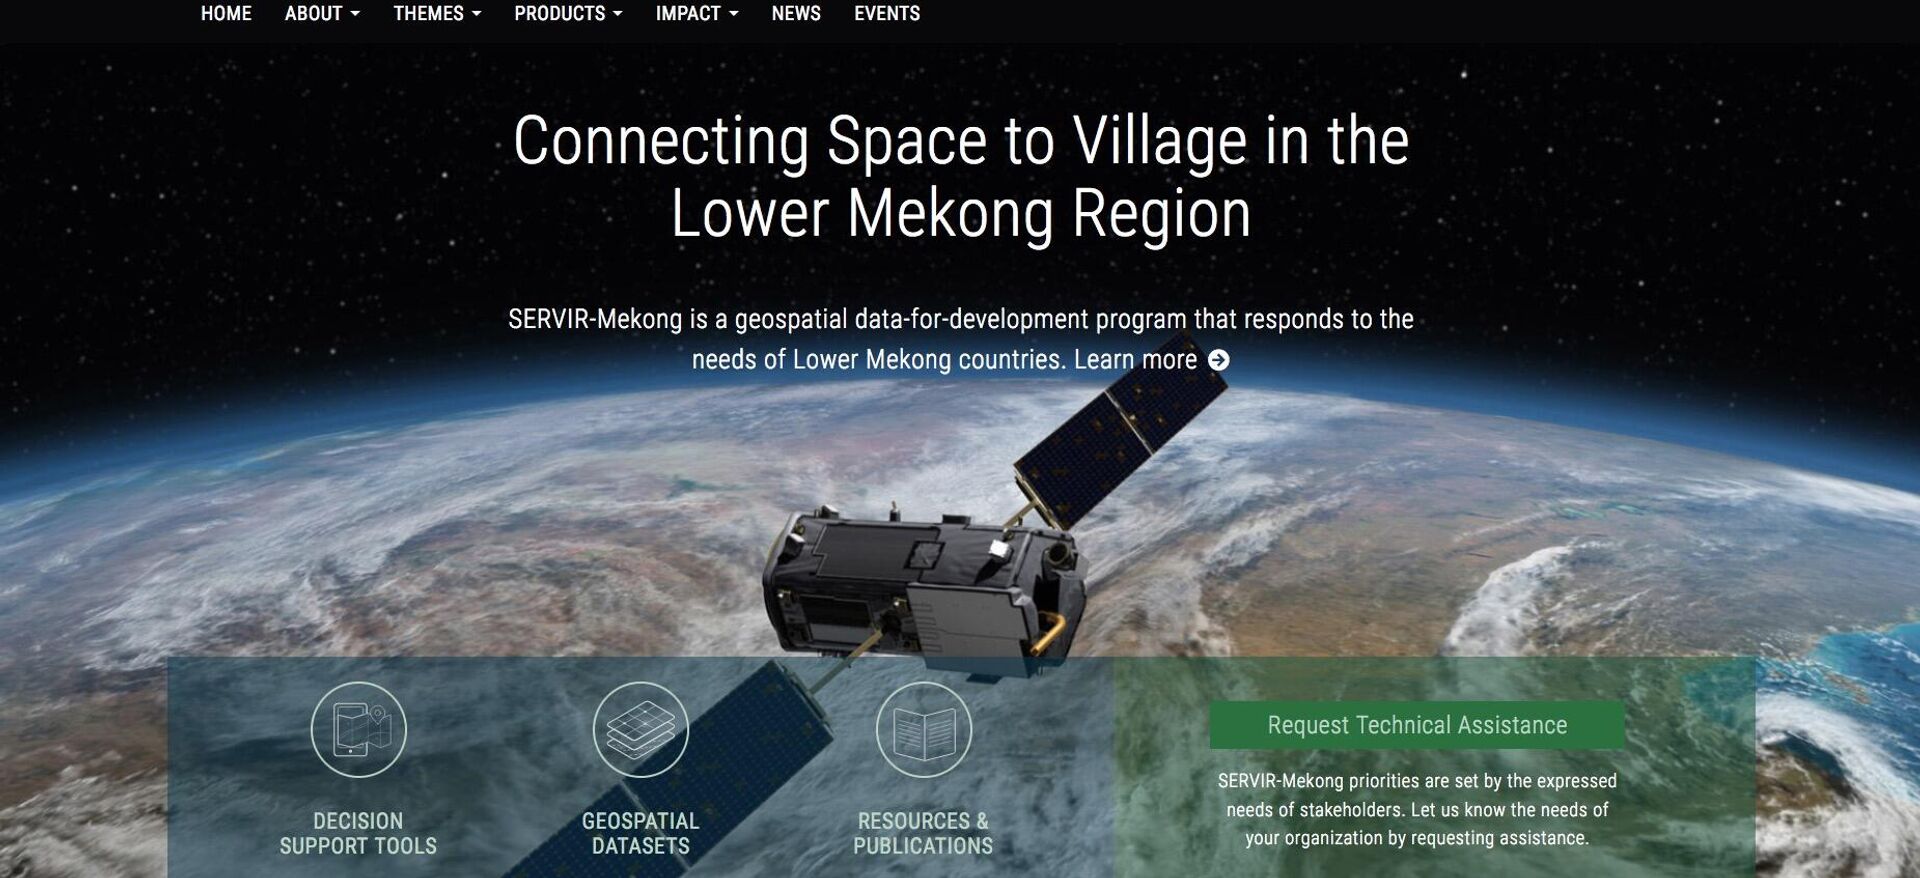 Dự án SERVIR-Mekong, hợp tác với Cơ quan Phát triển Quốc tế Mỹ (USAID) và Cơ quan Hàng không và Vũ trụ Quốc gia (NASA) để giúp các quốc gia sử dụng dữ liệu vệ tinh giải quyết các thách thức về an ninh lương thực, quản lý tài nguyên thiên nhiên, khí hậu, chất lượng không khí và thiên tai - Sputnik Việt Nam, 1920, 29.03.2022